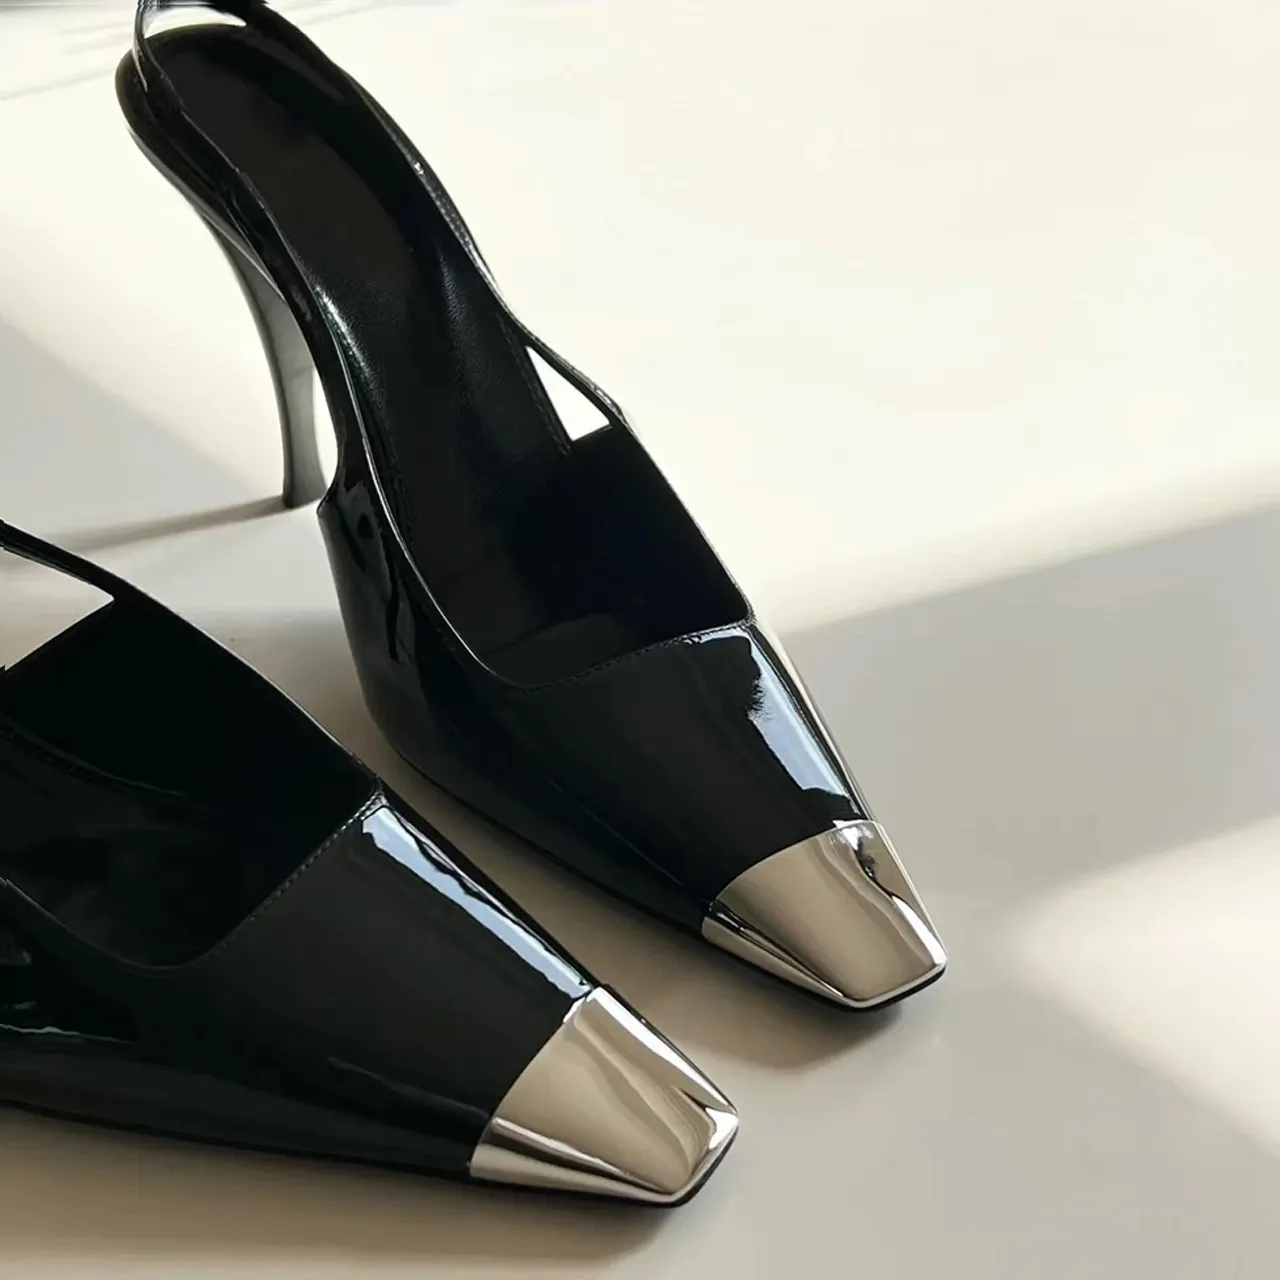 Moda preto laca couro salto alto novo metal quadrado cabeça salto fino único sapatos baotou feminino tamanho grande 34-43